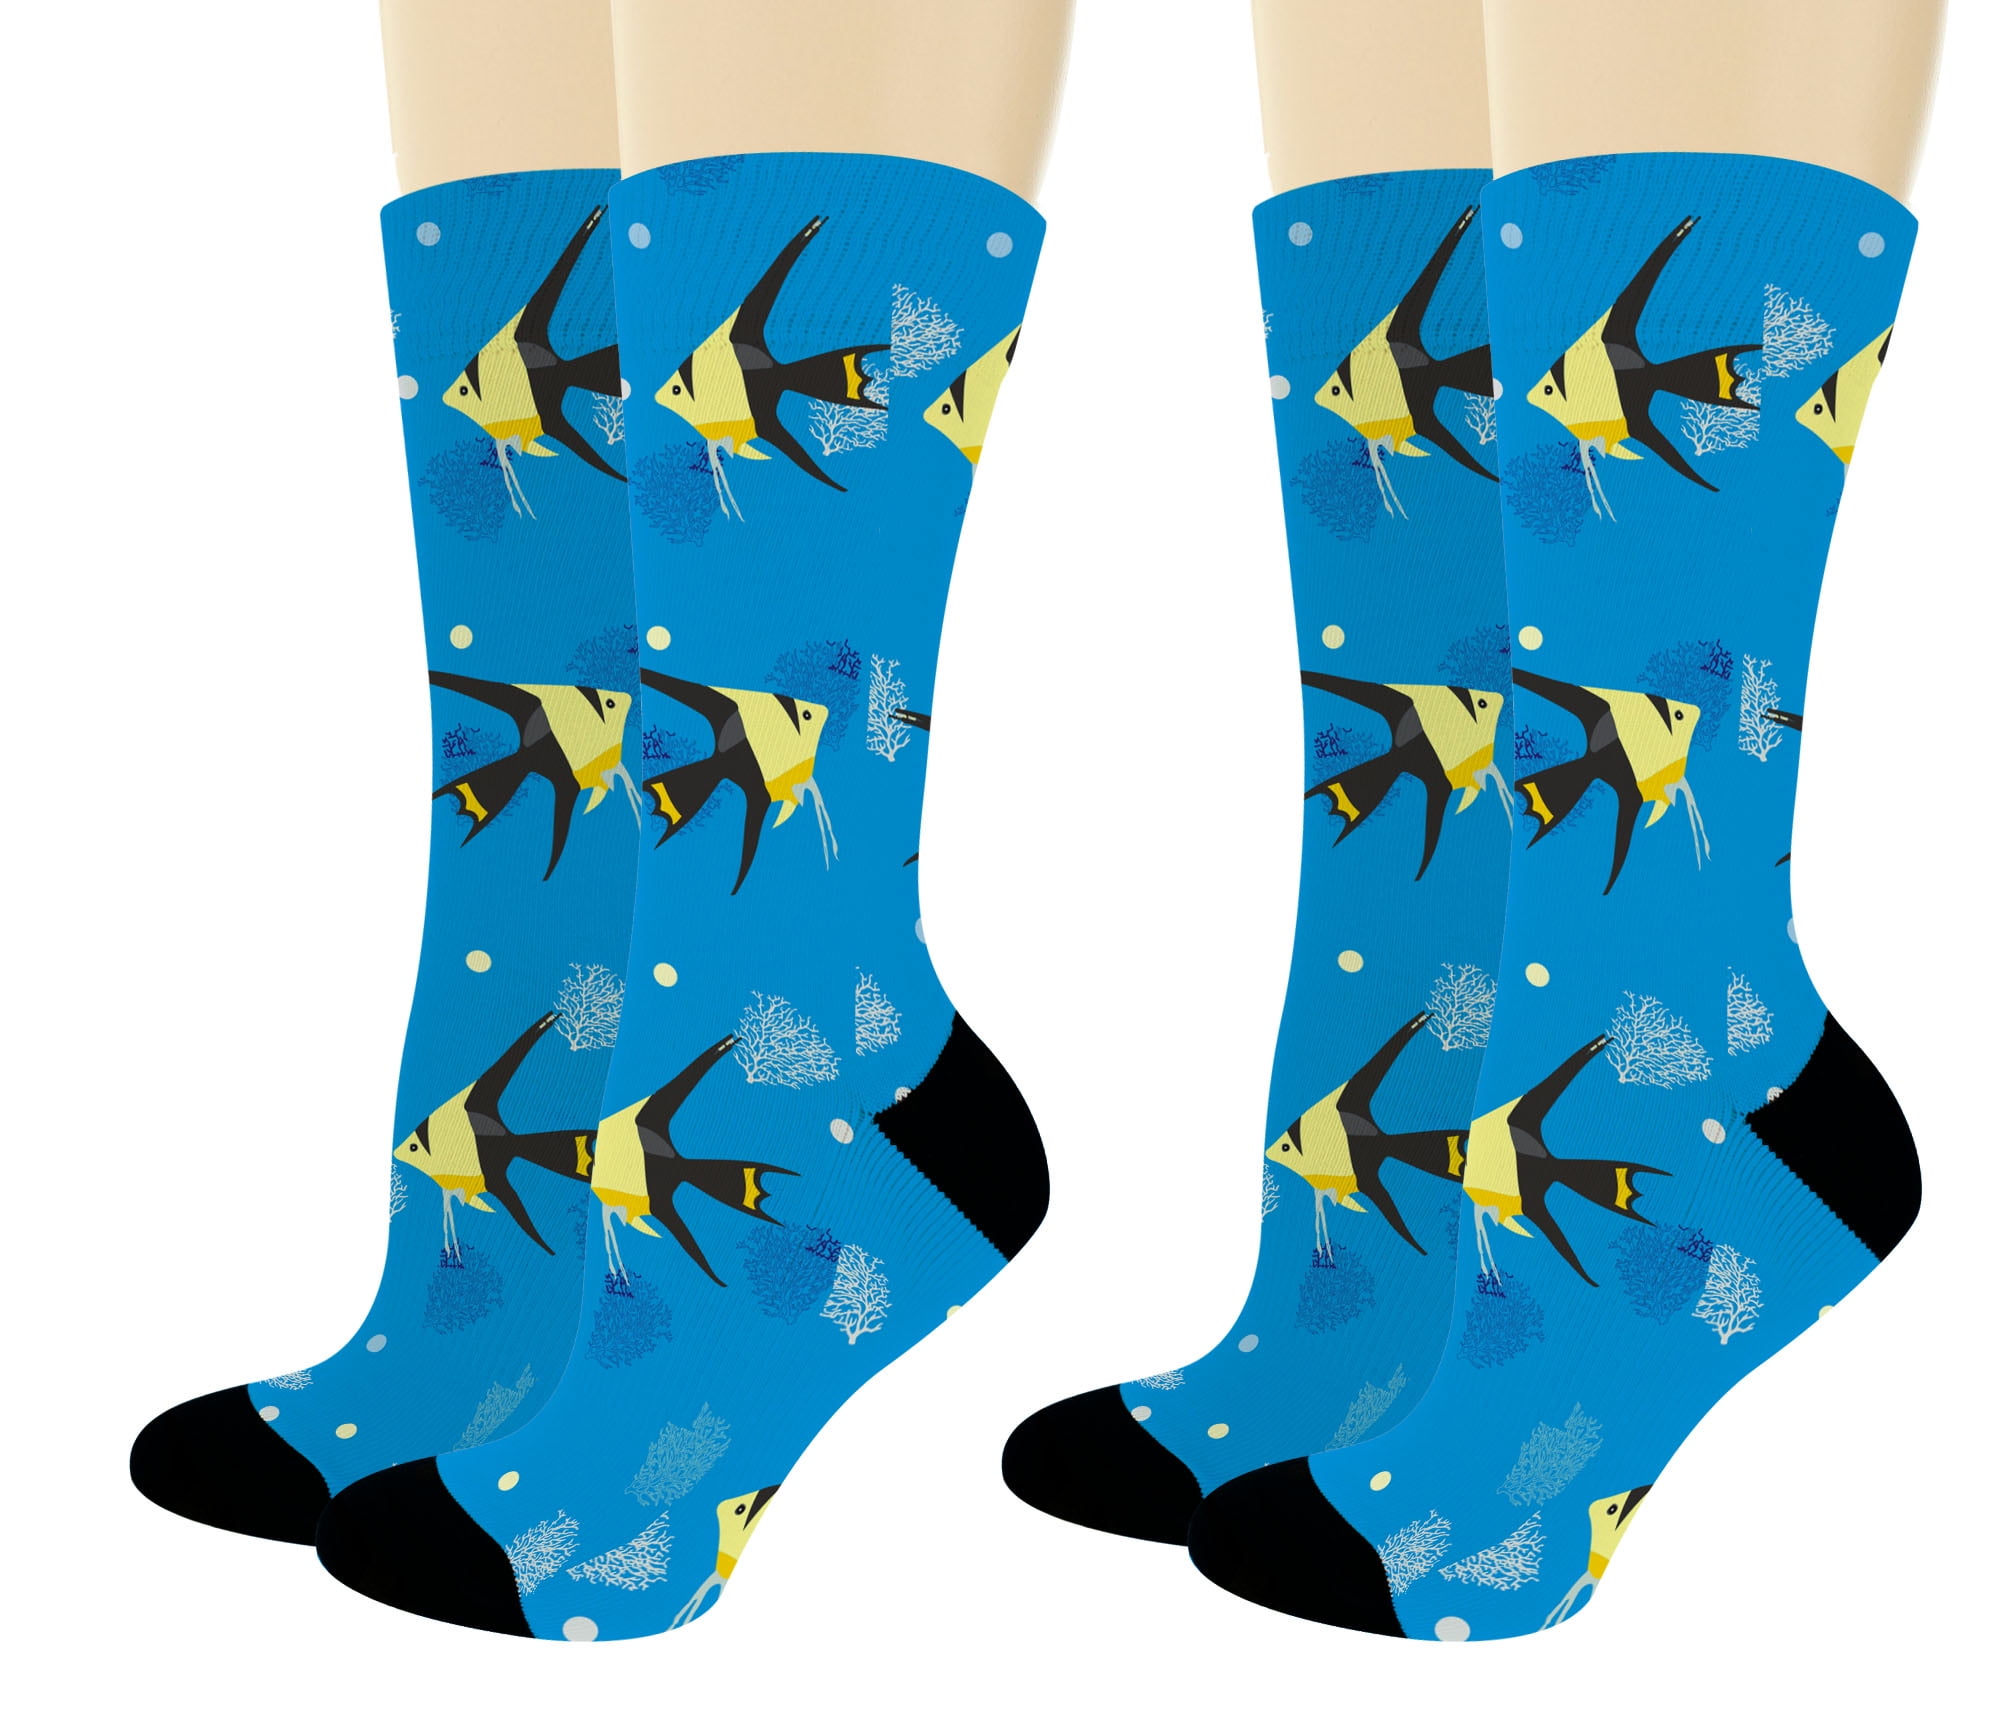 personalized fashion socks Underwater,Monochrome Ocean Theme,socks women